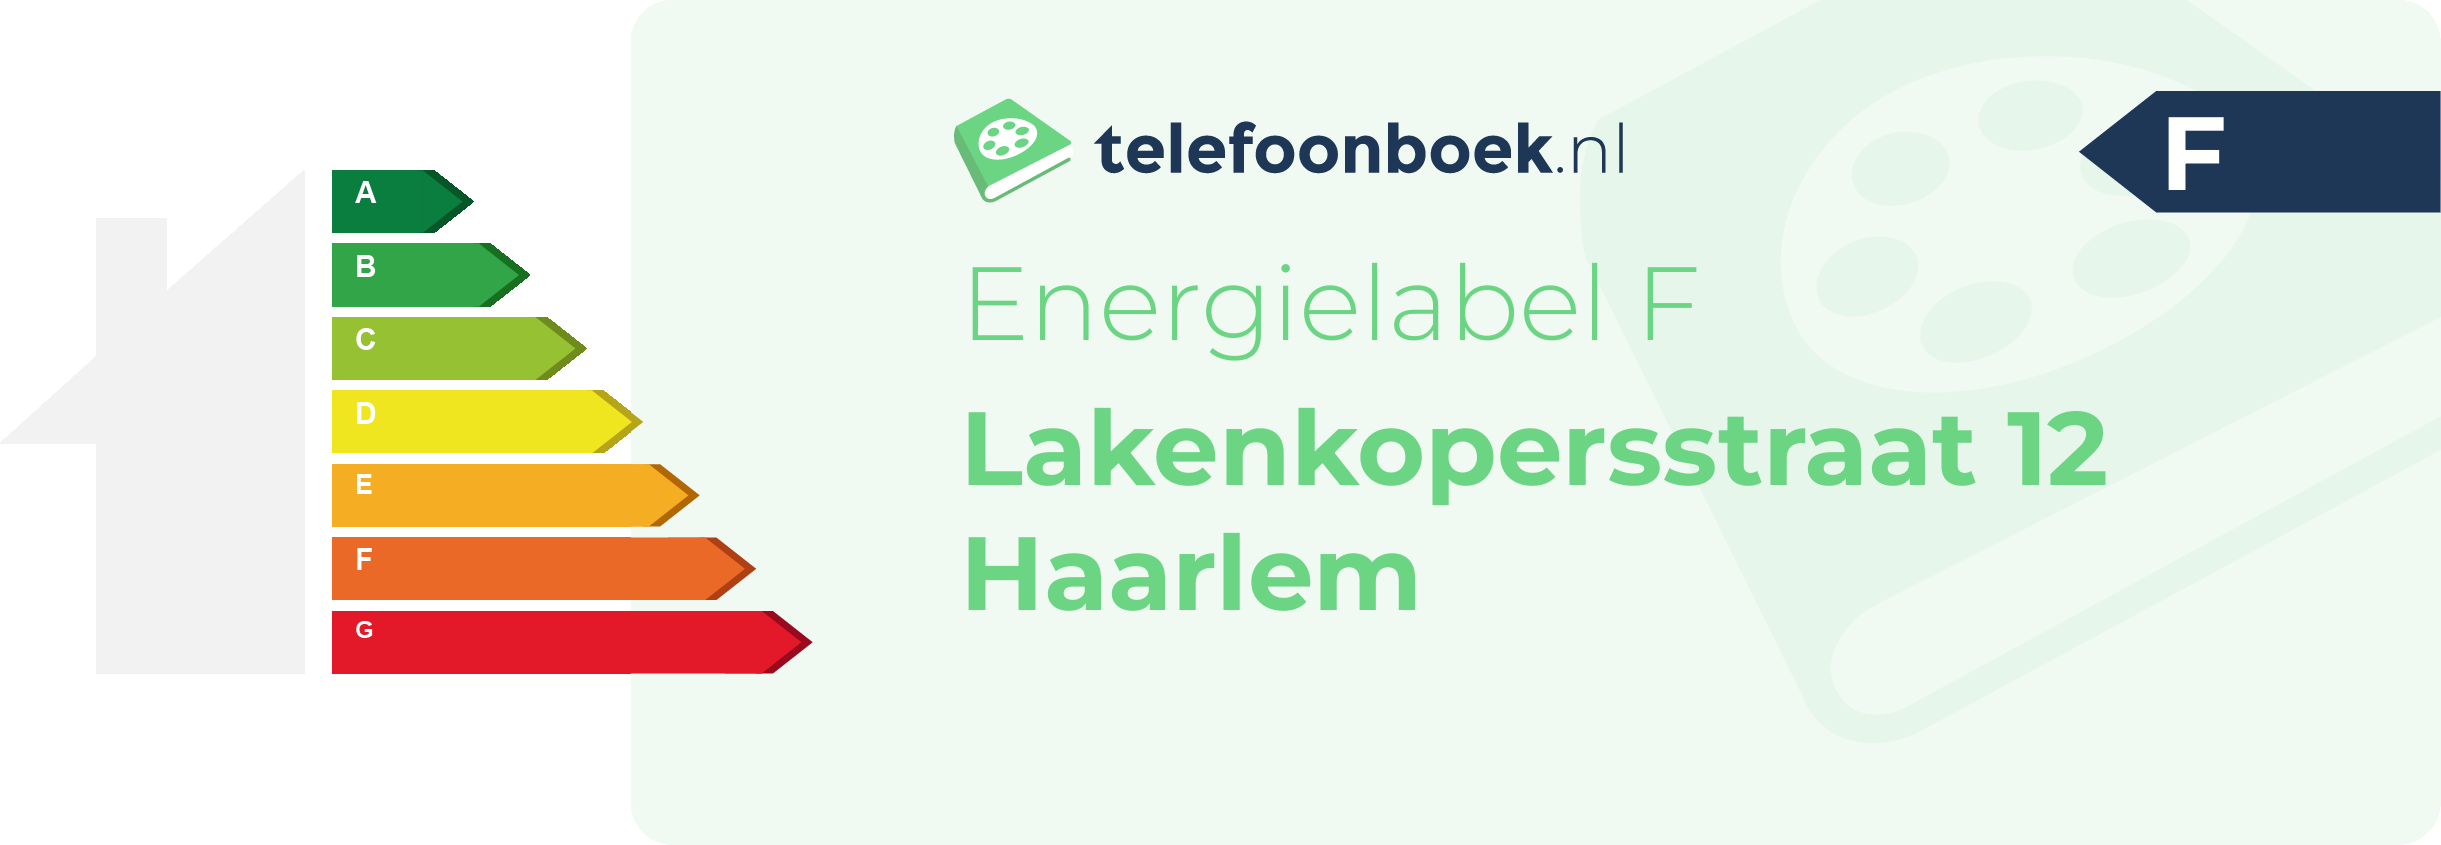 Energielabel Lakenkopersstraat 12 Haarlem